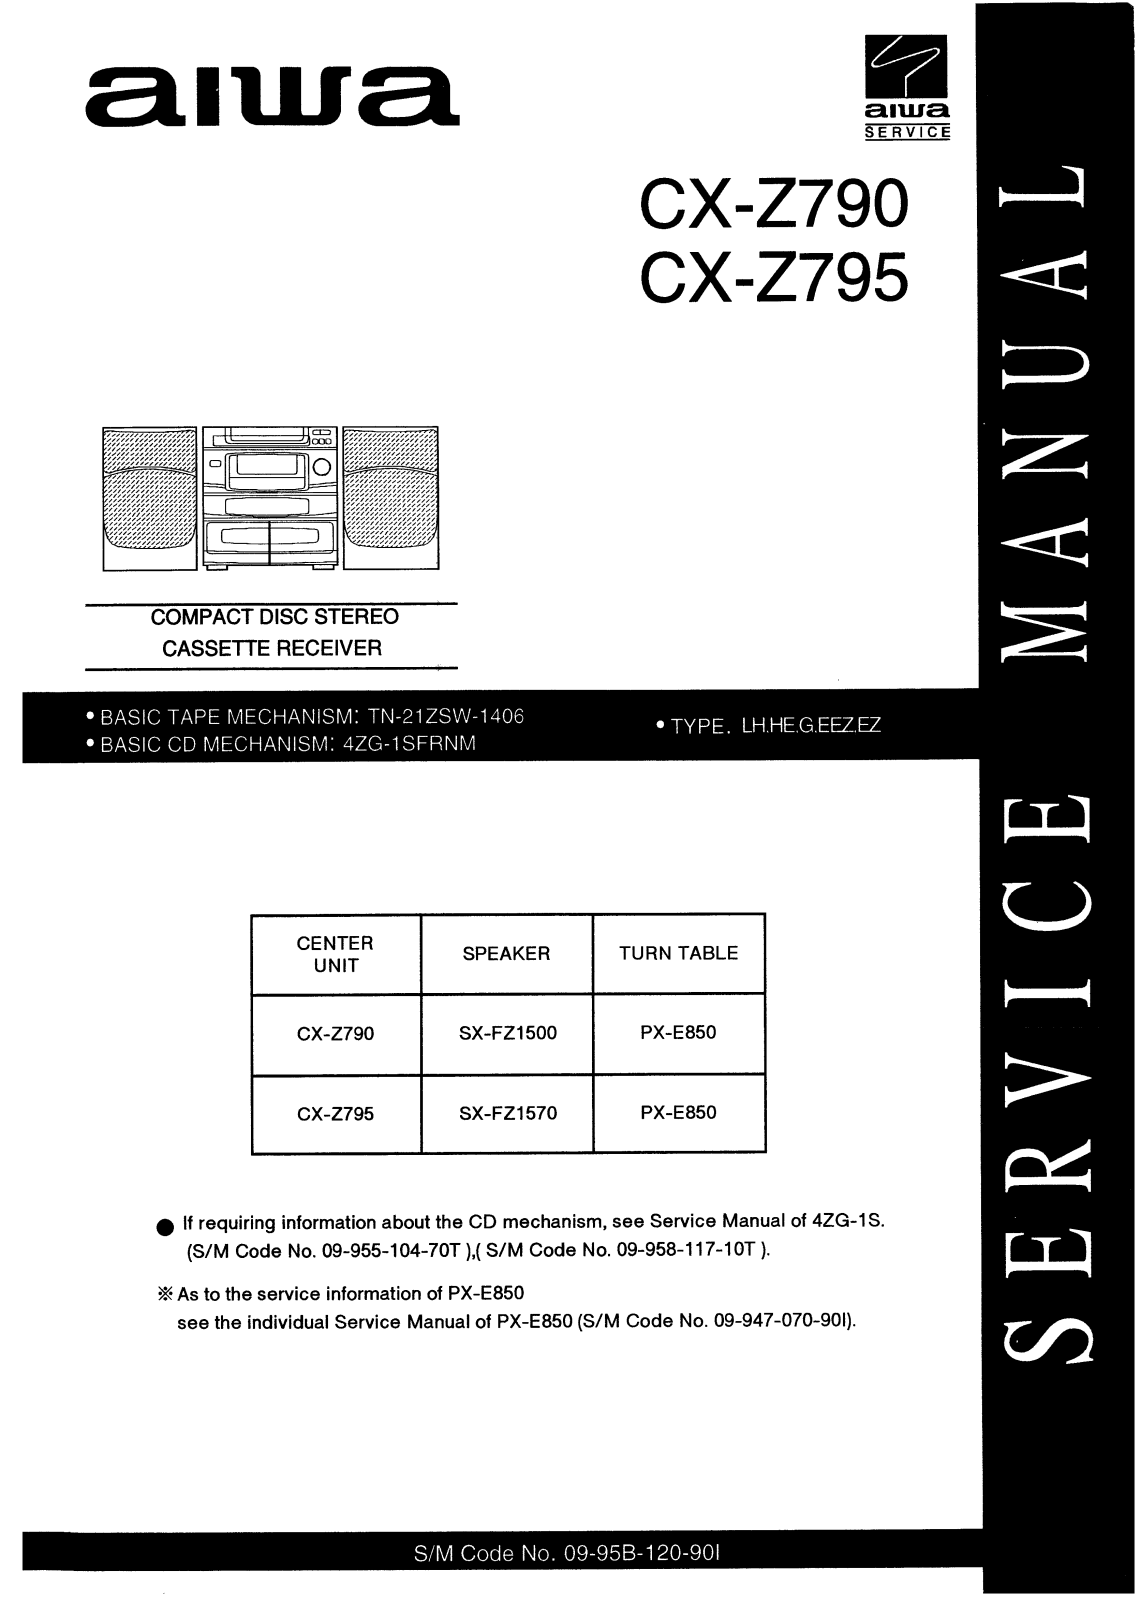 Aiwa CX-Z795, CX-Z790 User Manual